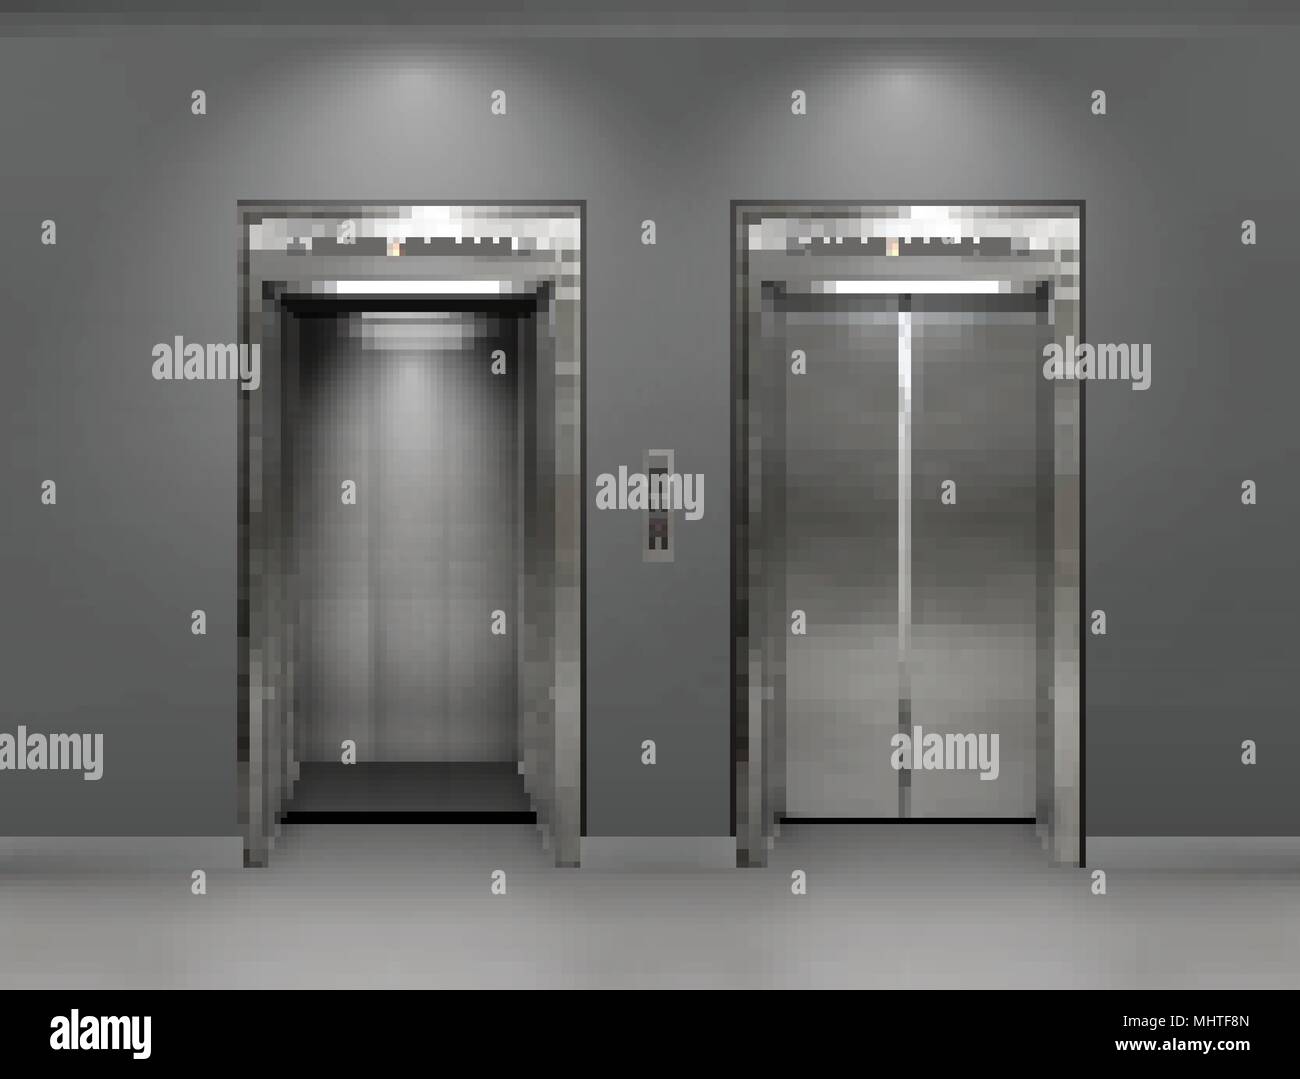 Immeuble de bureau en métal chromé porte de l'ascenseur. La variante ouverte et fermée. Vector illustration réaliste des panneaux de mur gris ascenseur immeuble de bureaux. Illustration de Vecteur